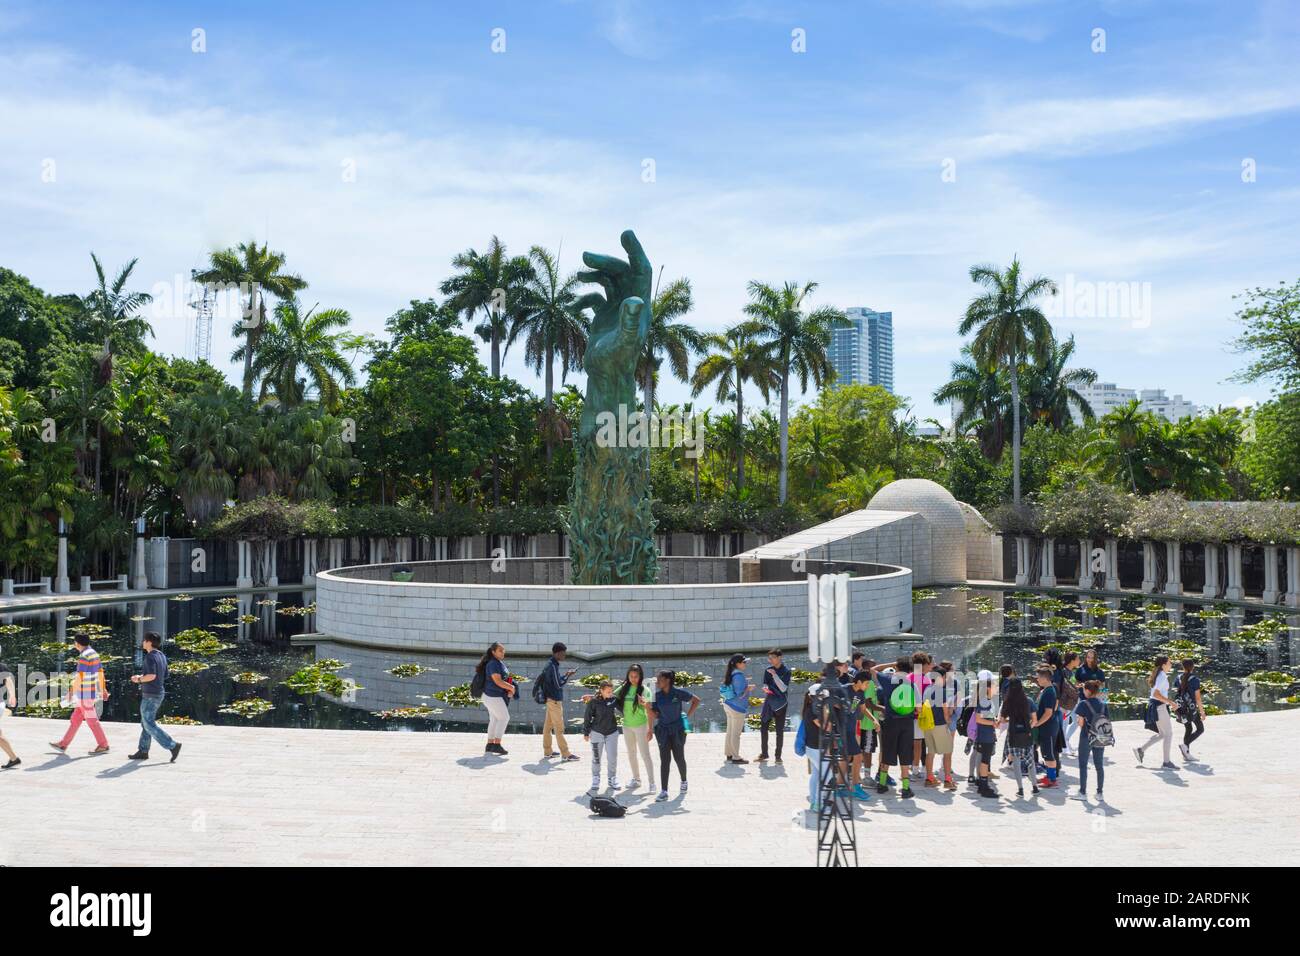 Blick auf das Holocaust-Museum und den Botanischen Garten, South Beach, Miami, Florida, Vereinigte Staaten von Amerika, Nordamerika Stockfoto